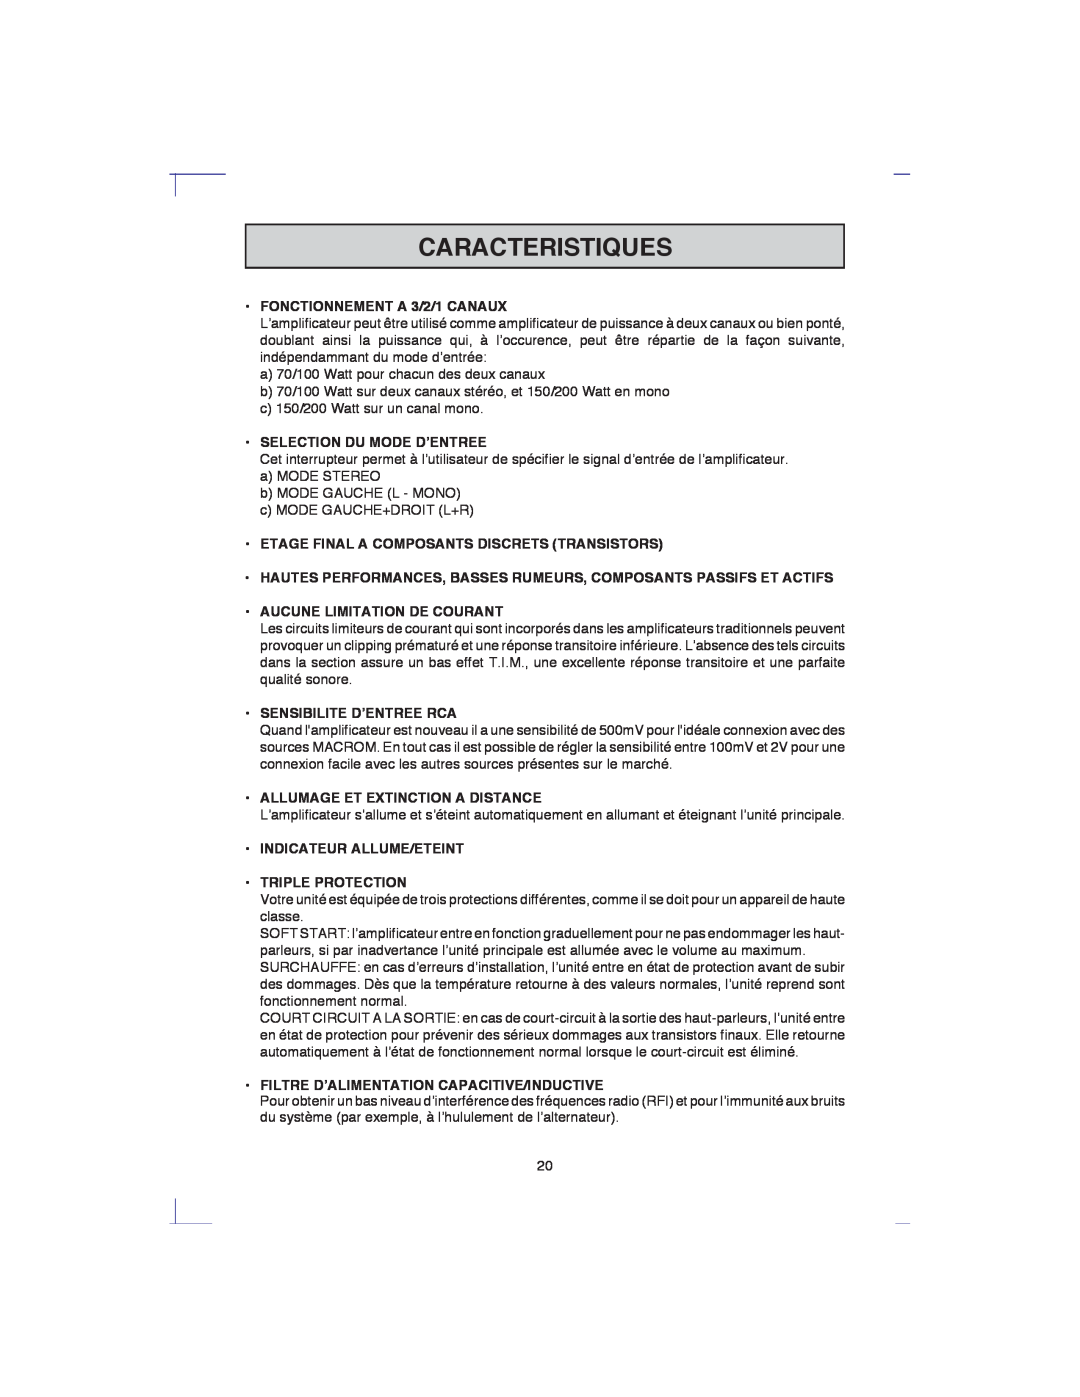 Macrom 42.24 Caracteristiques, FONCTIONNEMENT A 3/2/1 CANAUX, Selection Du Mode D’Entree, Aucune Limitation De Courant 